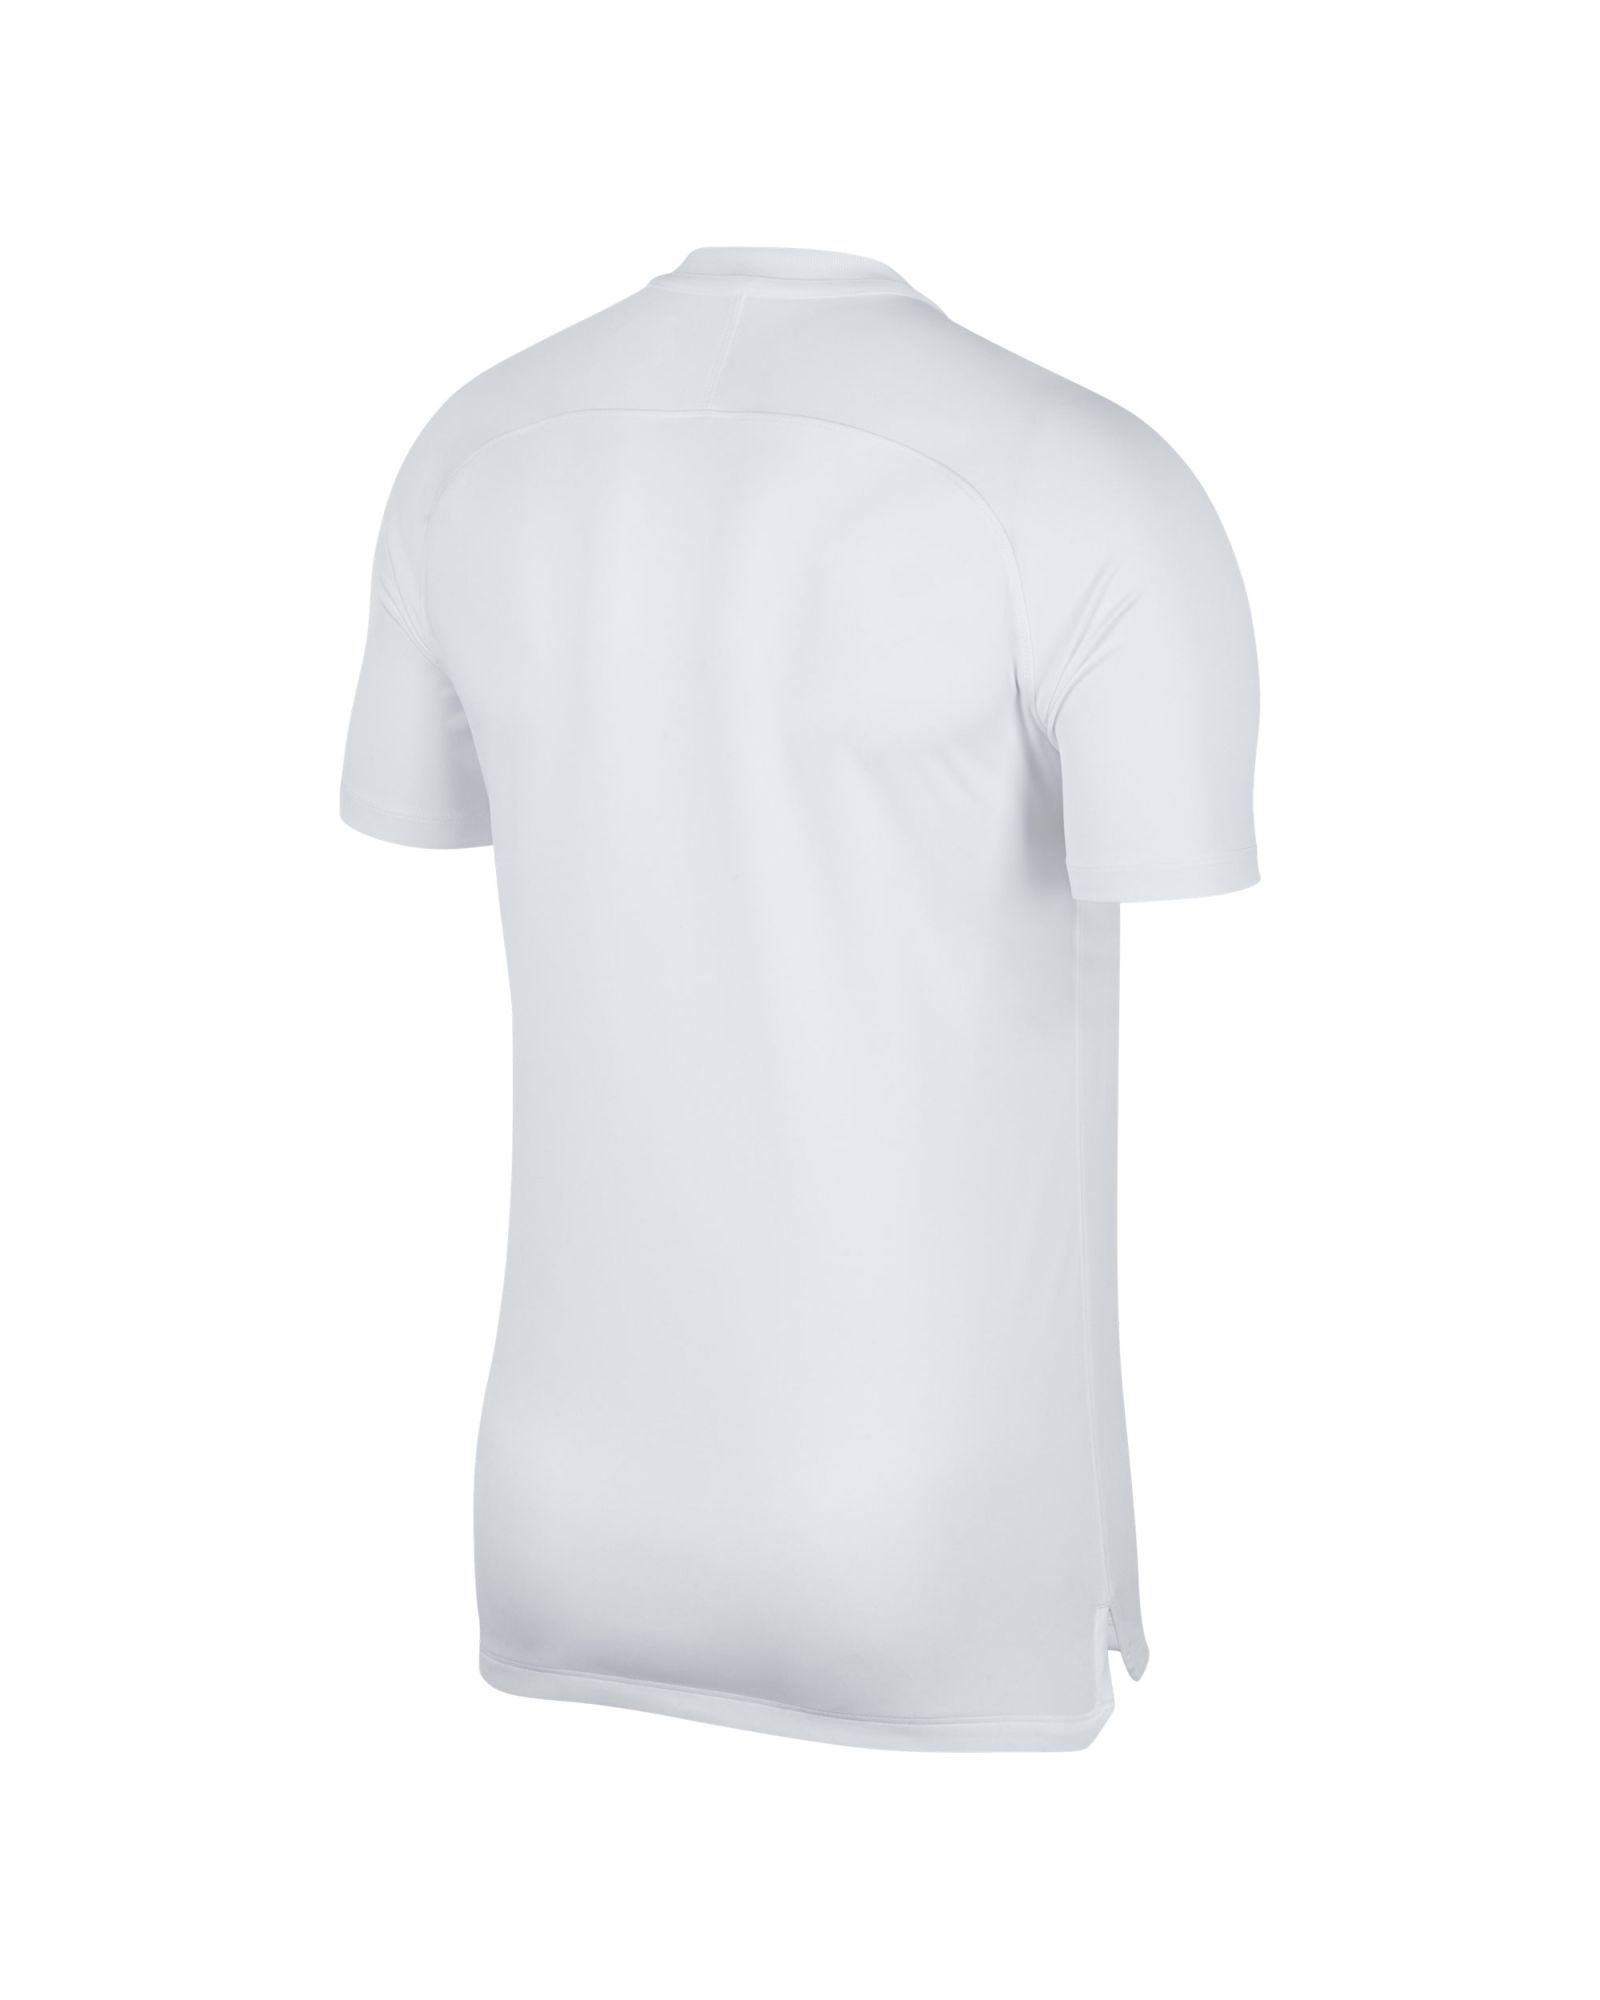 Camiseta de Training Inglaterra Squad Mundial 2018 Blanco - Fútbol Factory